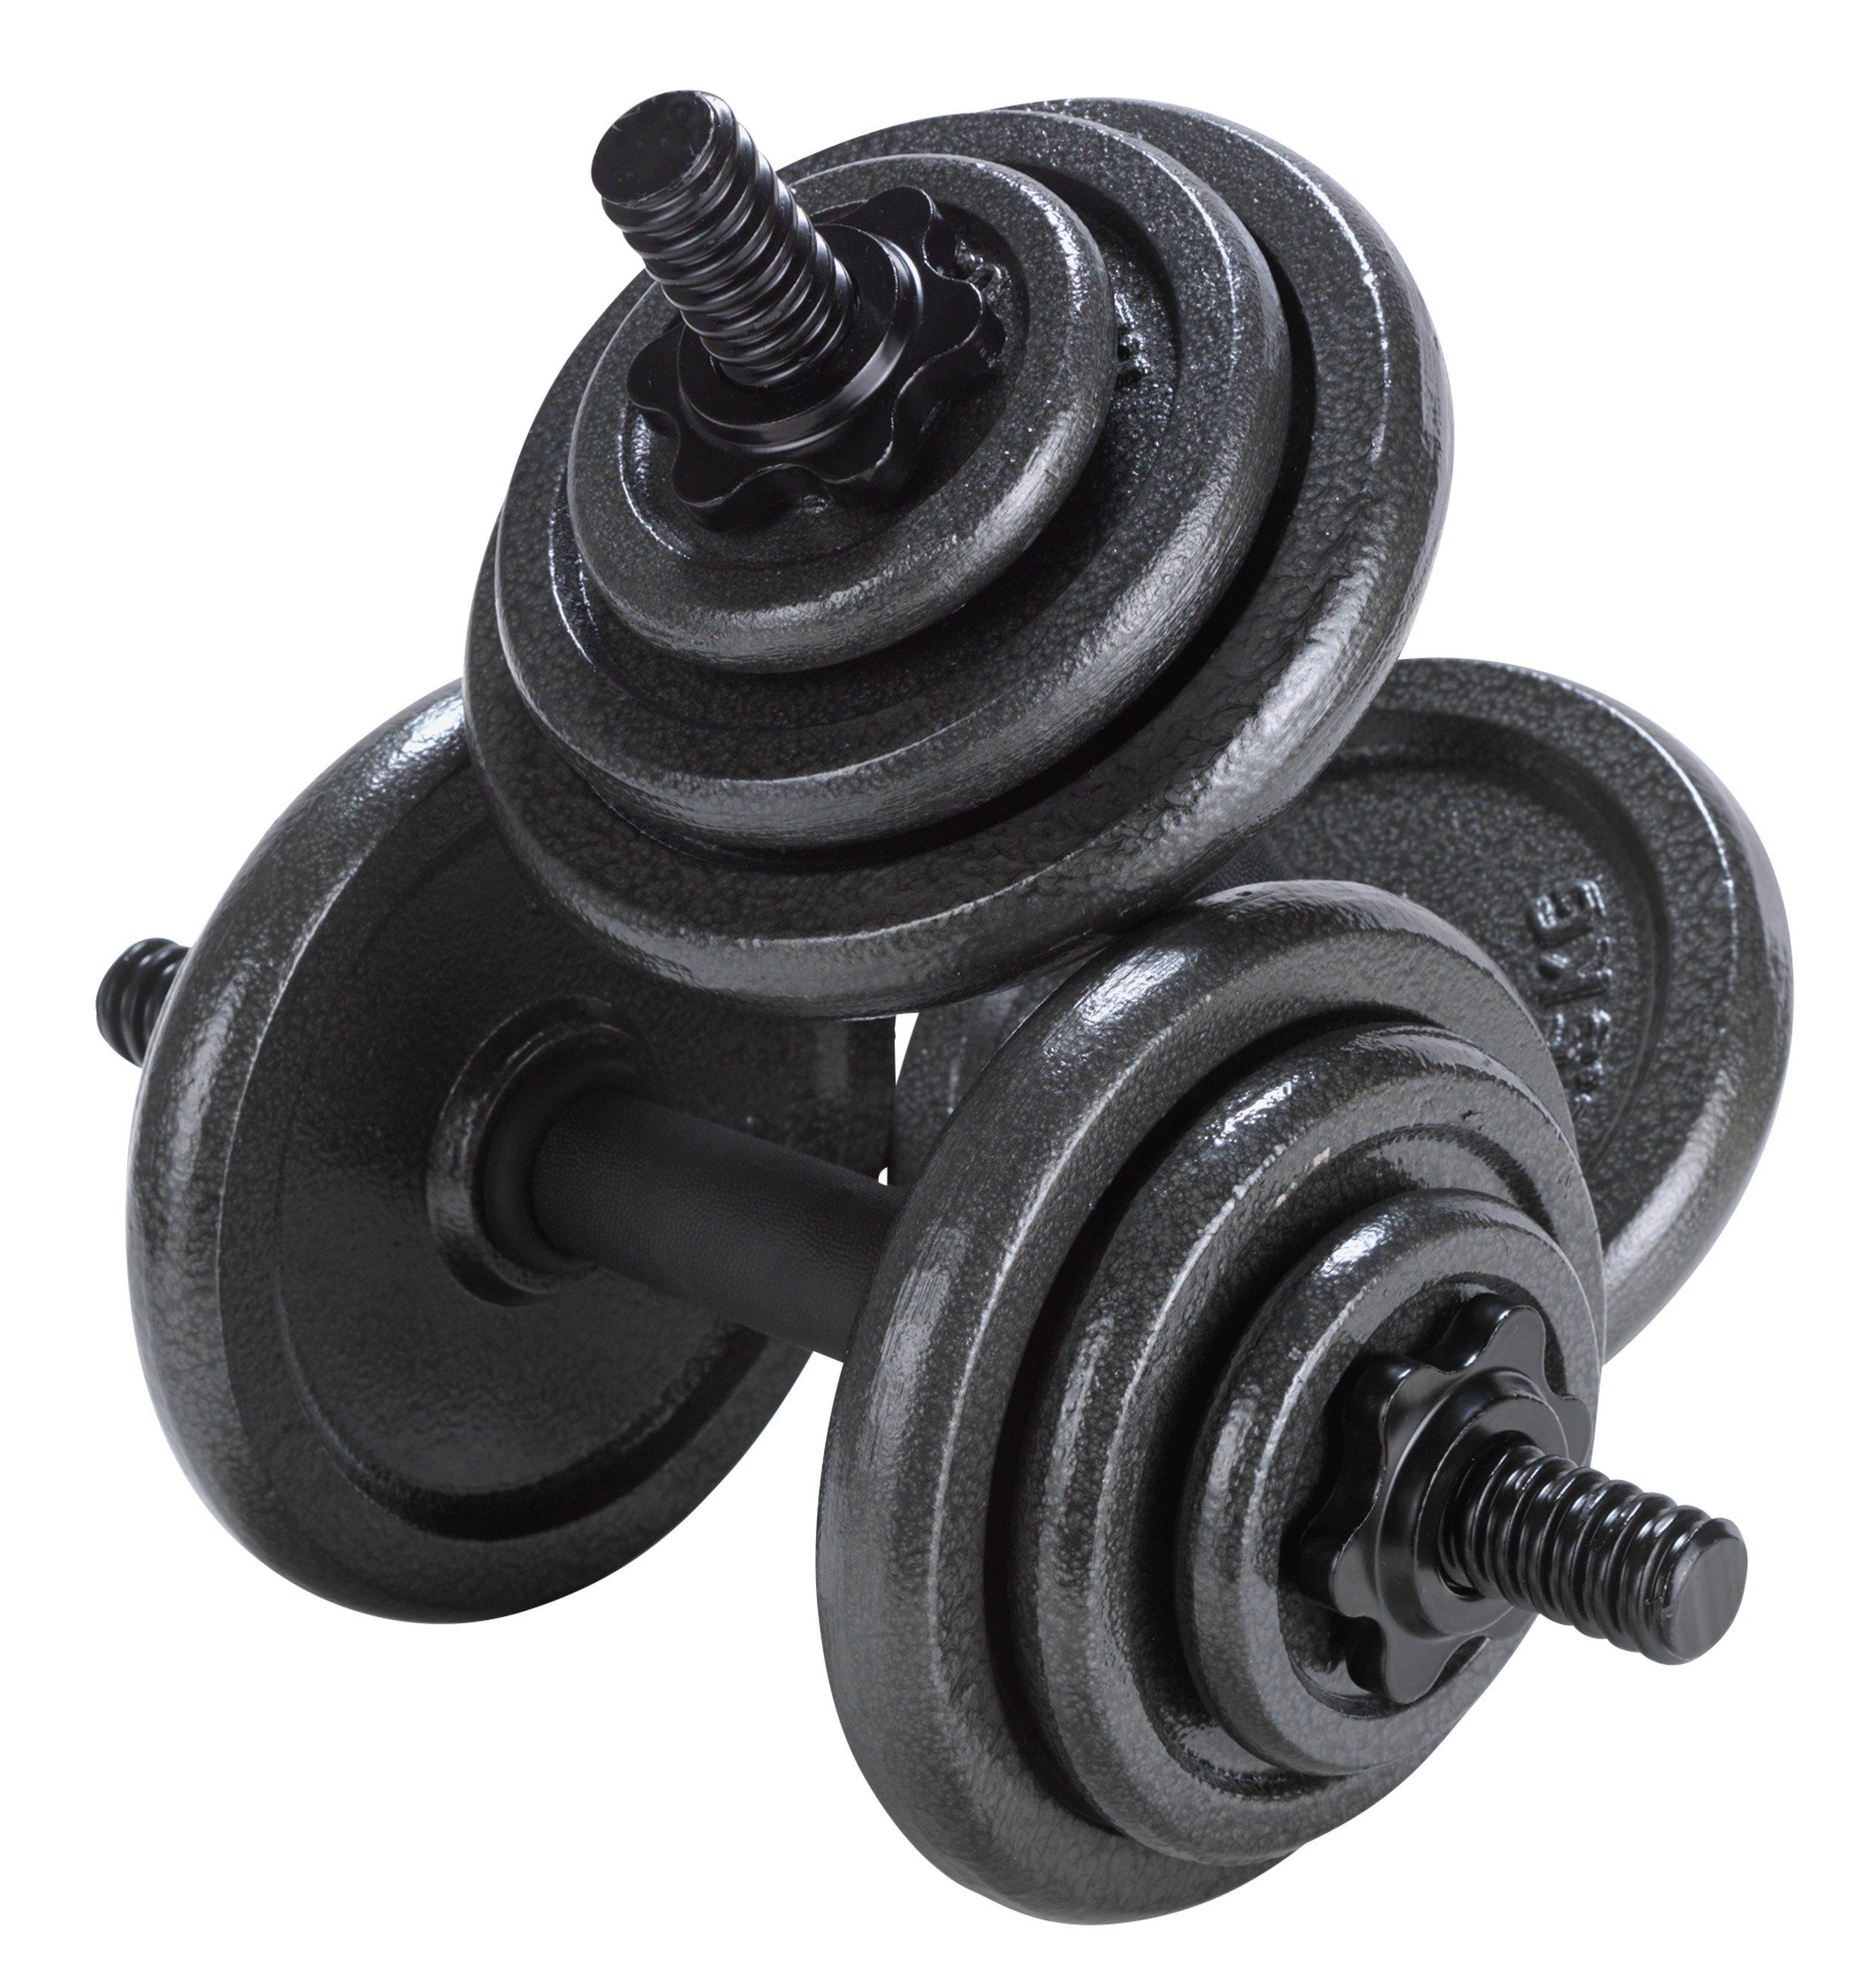 Dumbbell Set 30kg Adjustable Free Weights Bar Spinlock Vinyl Fitness Dumbells